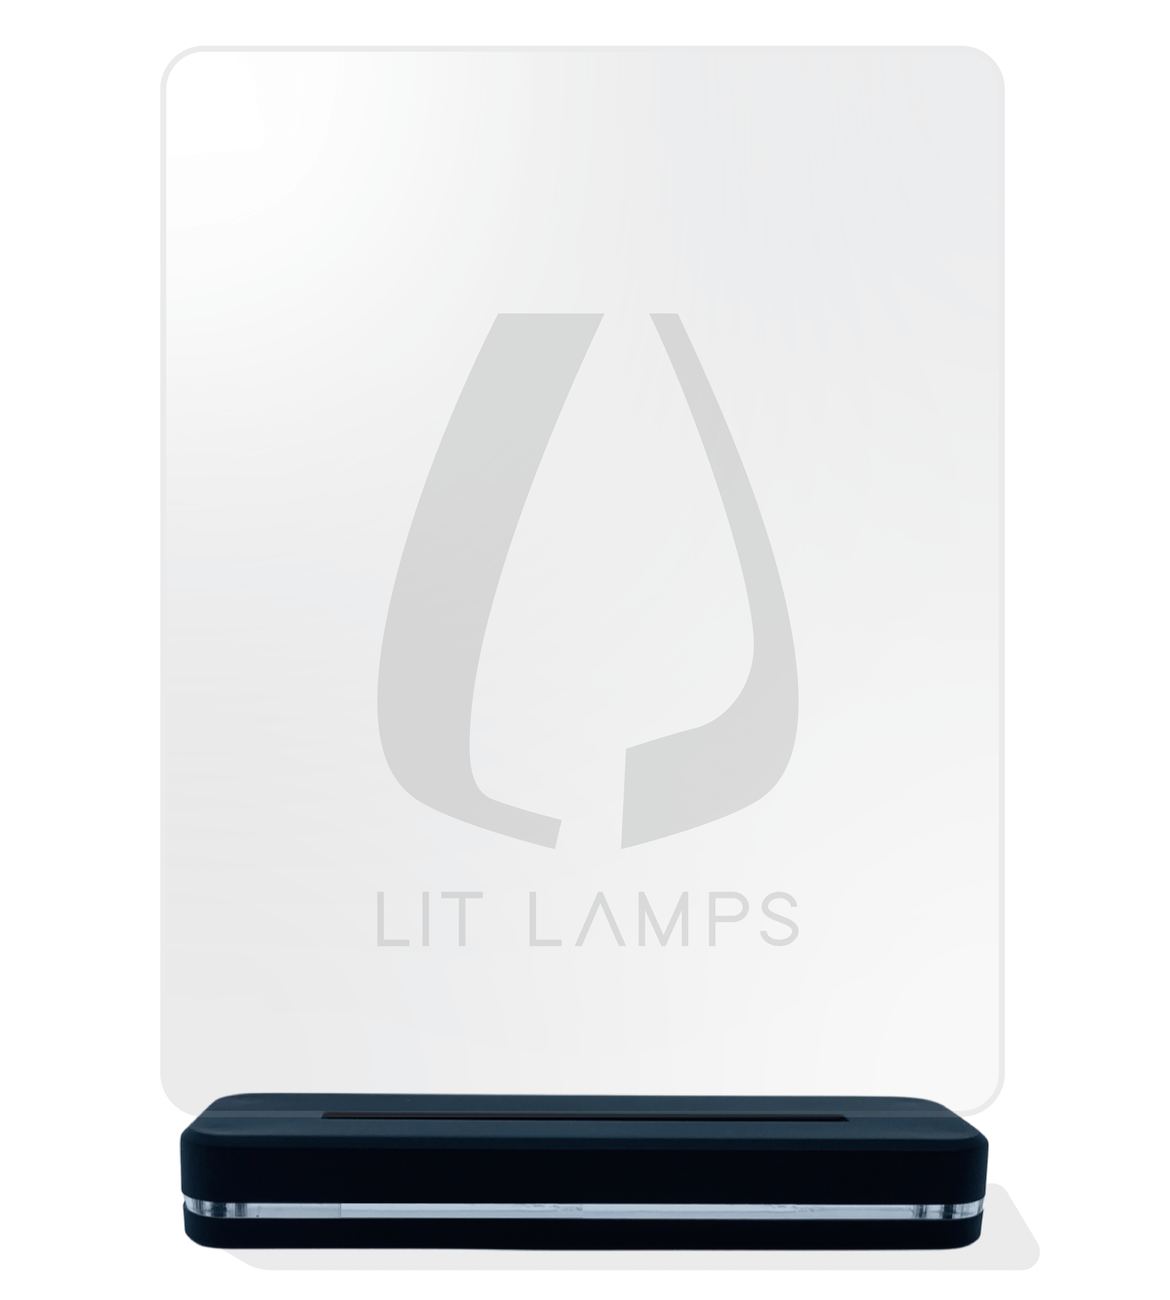 Happy Birthday LIT 3D Illusion Lamp - LIT Lamps - Heart 3D LED Lamp-3d Lamps